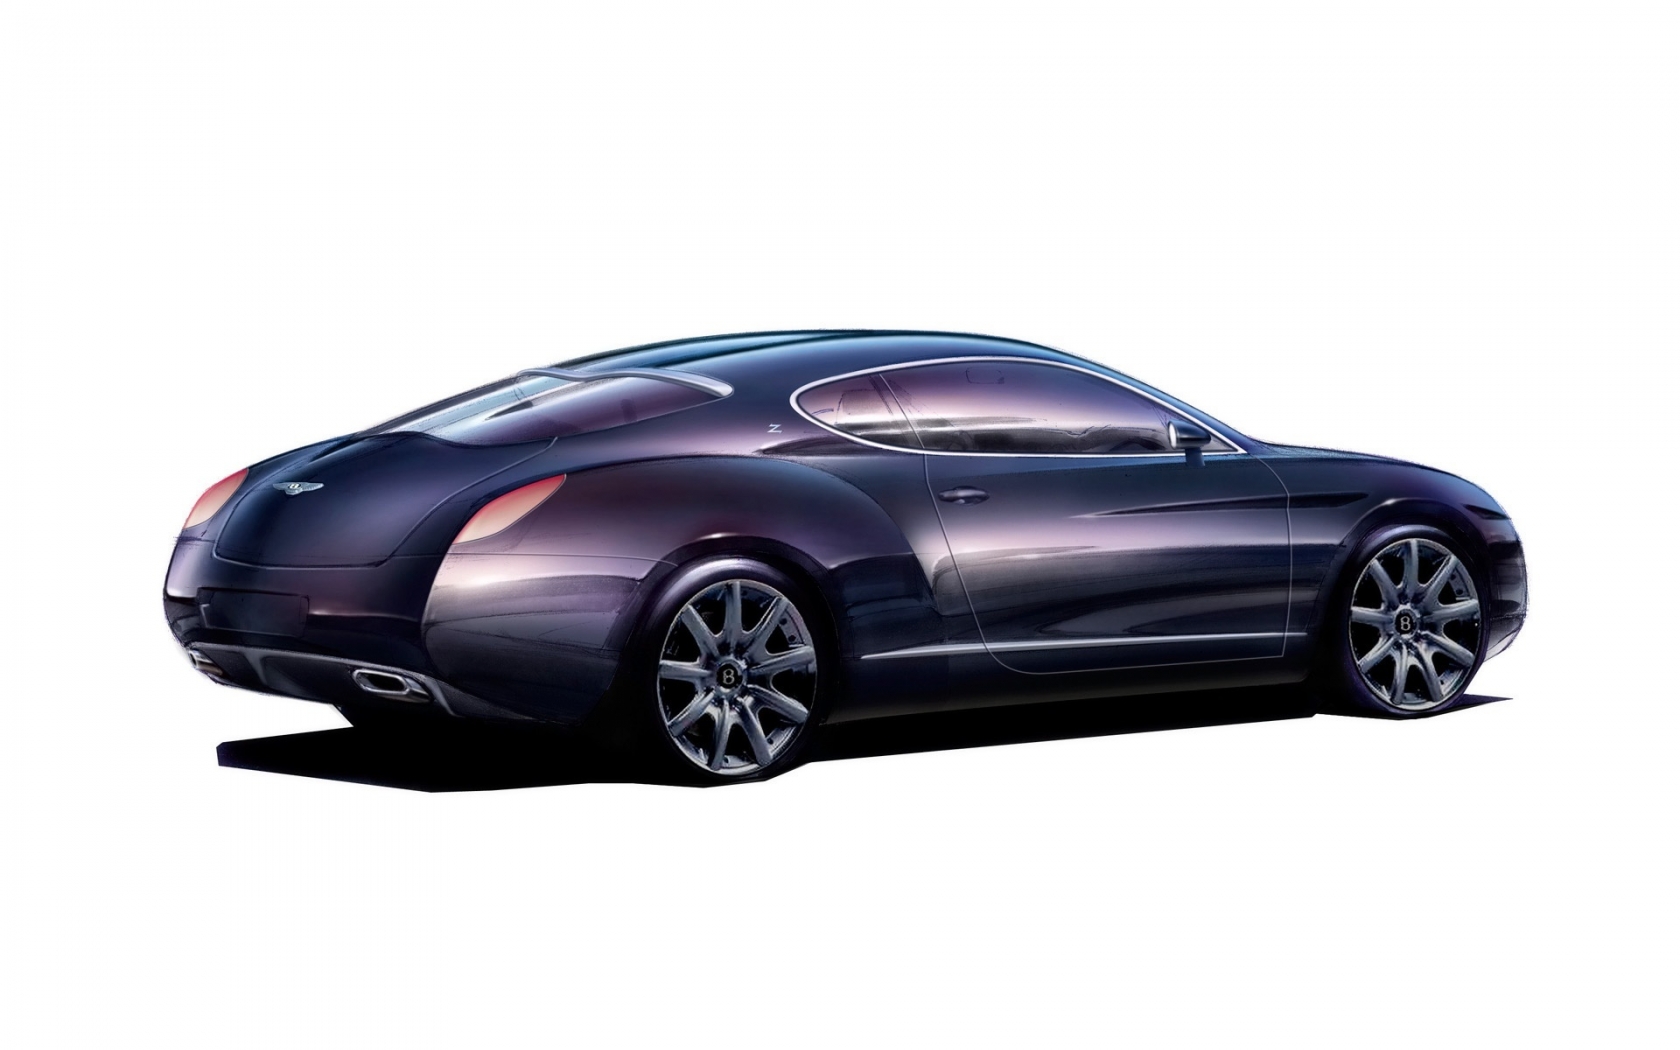 Bentley Zagato GTZ Sketch 2008 for 1680 x 1050 widescreen resolution